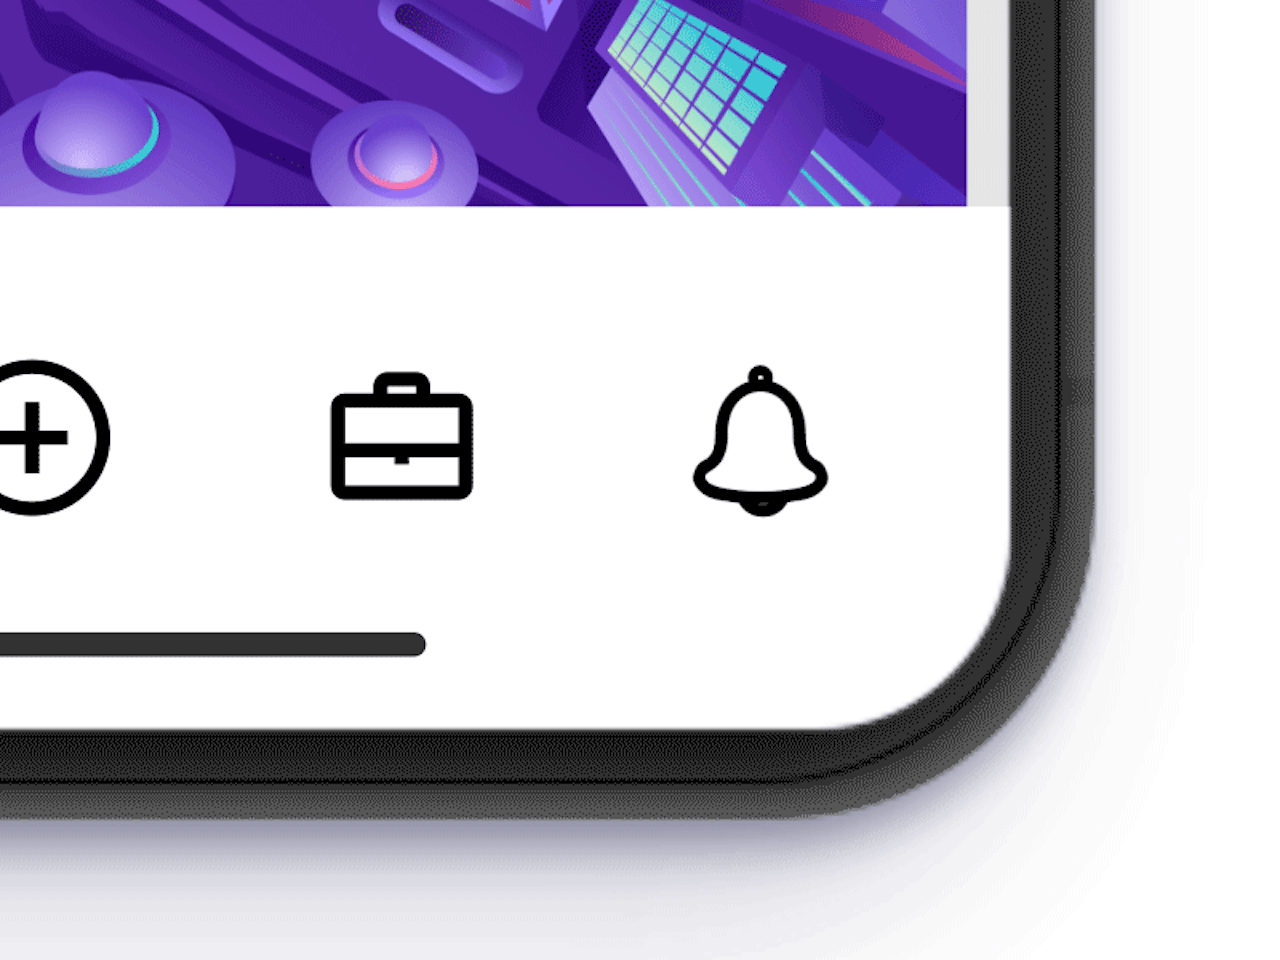 bewegend icoontje van een bel dat een pushmelding op een smartphone representeert.